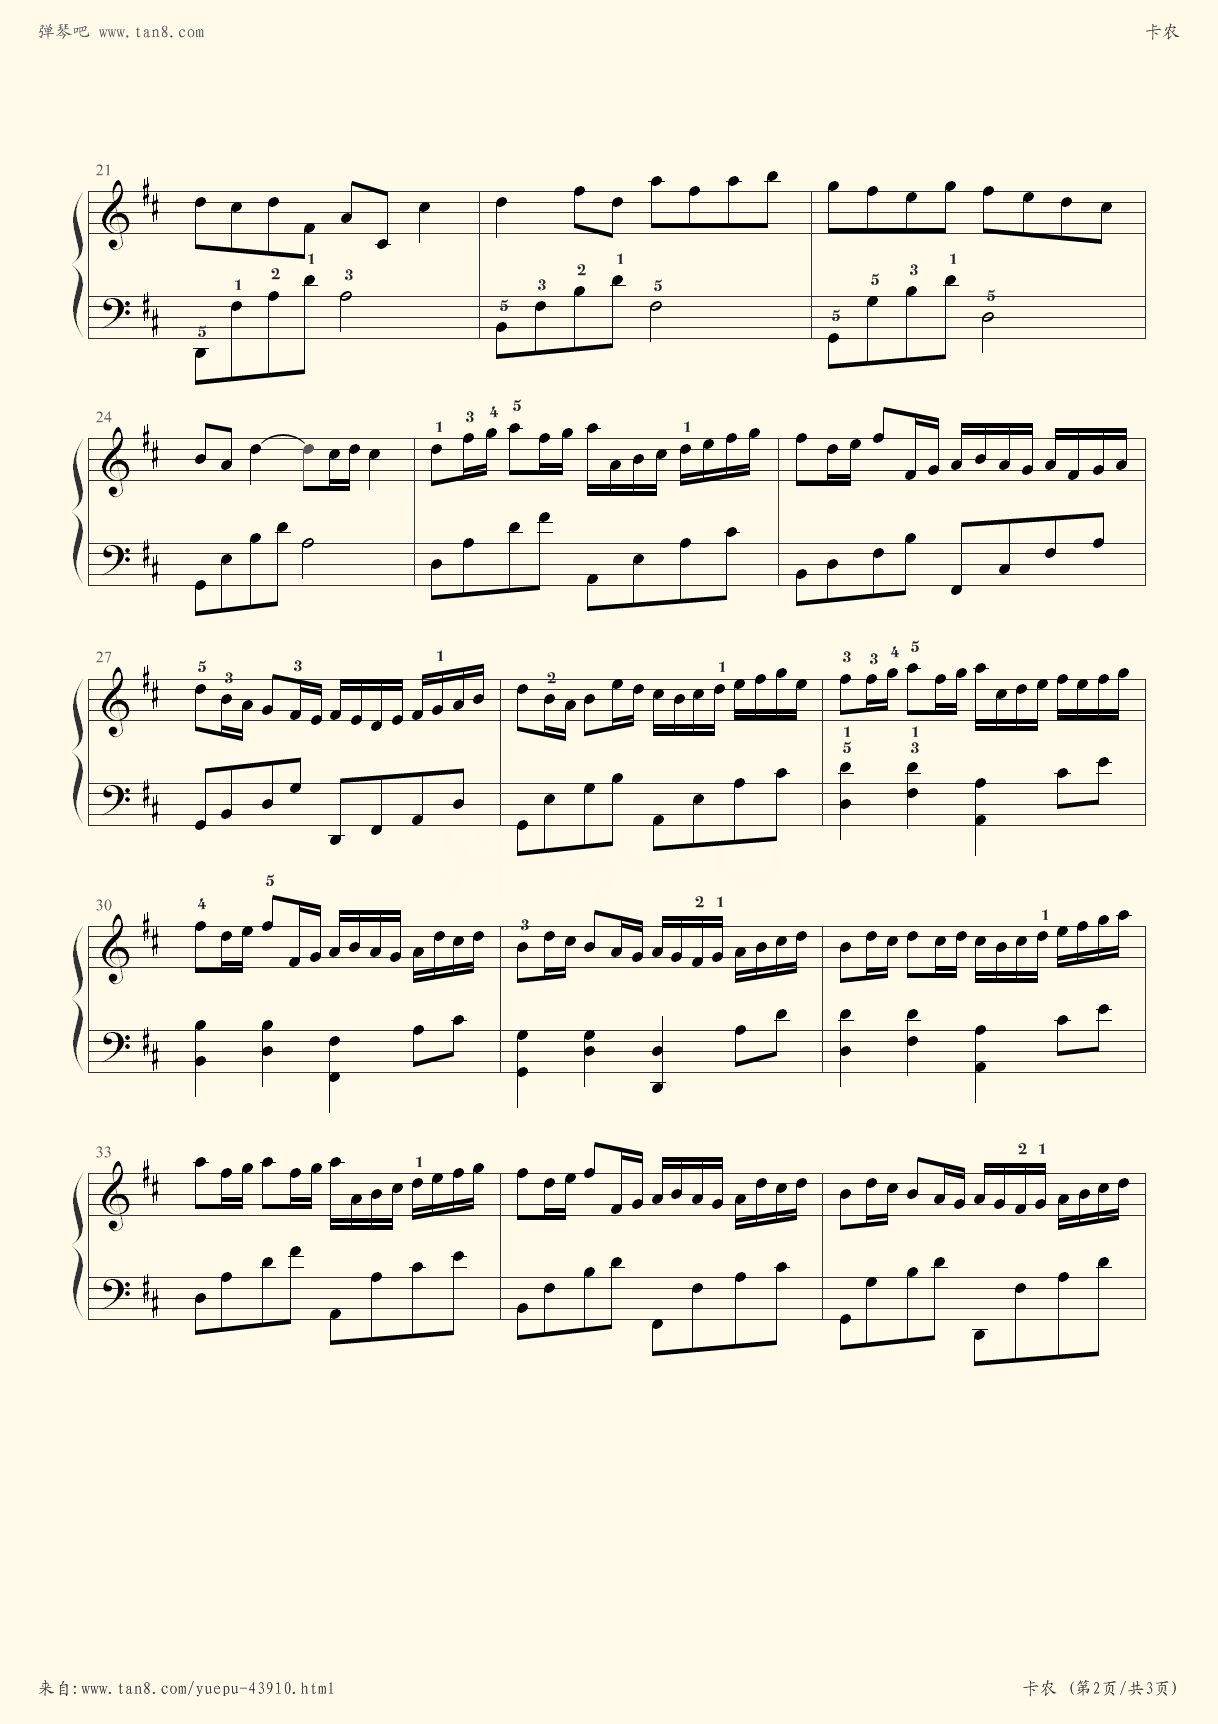 卡农钢琴谱简单版带指法(卡农初学版钢琴谱带指法)